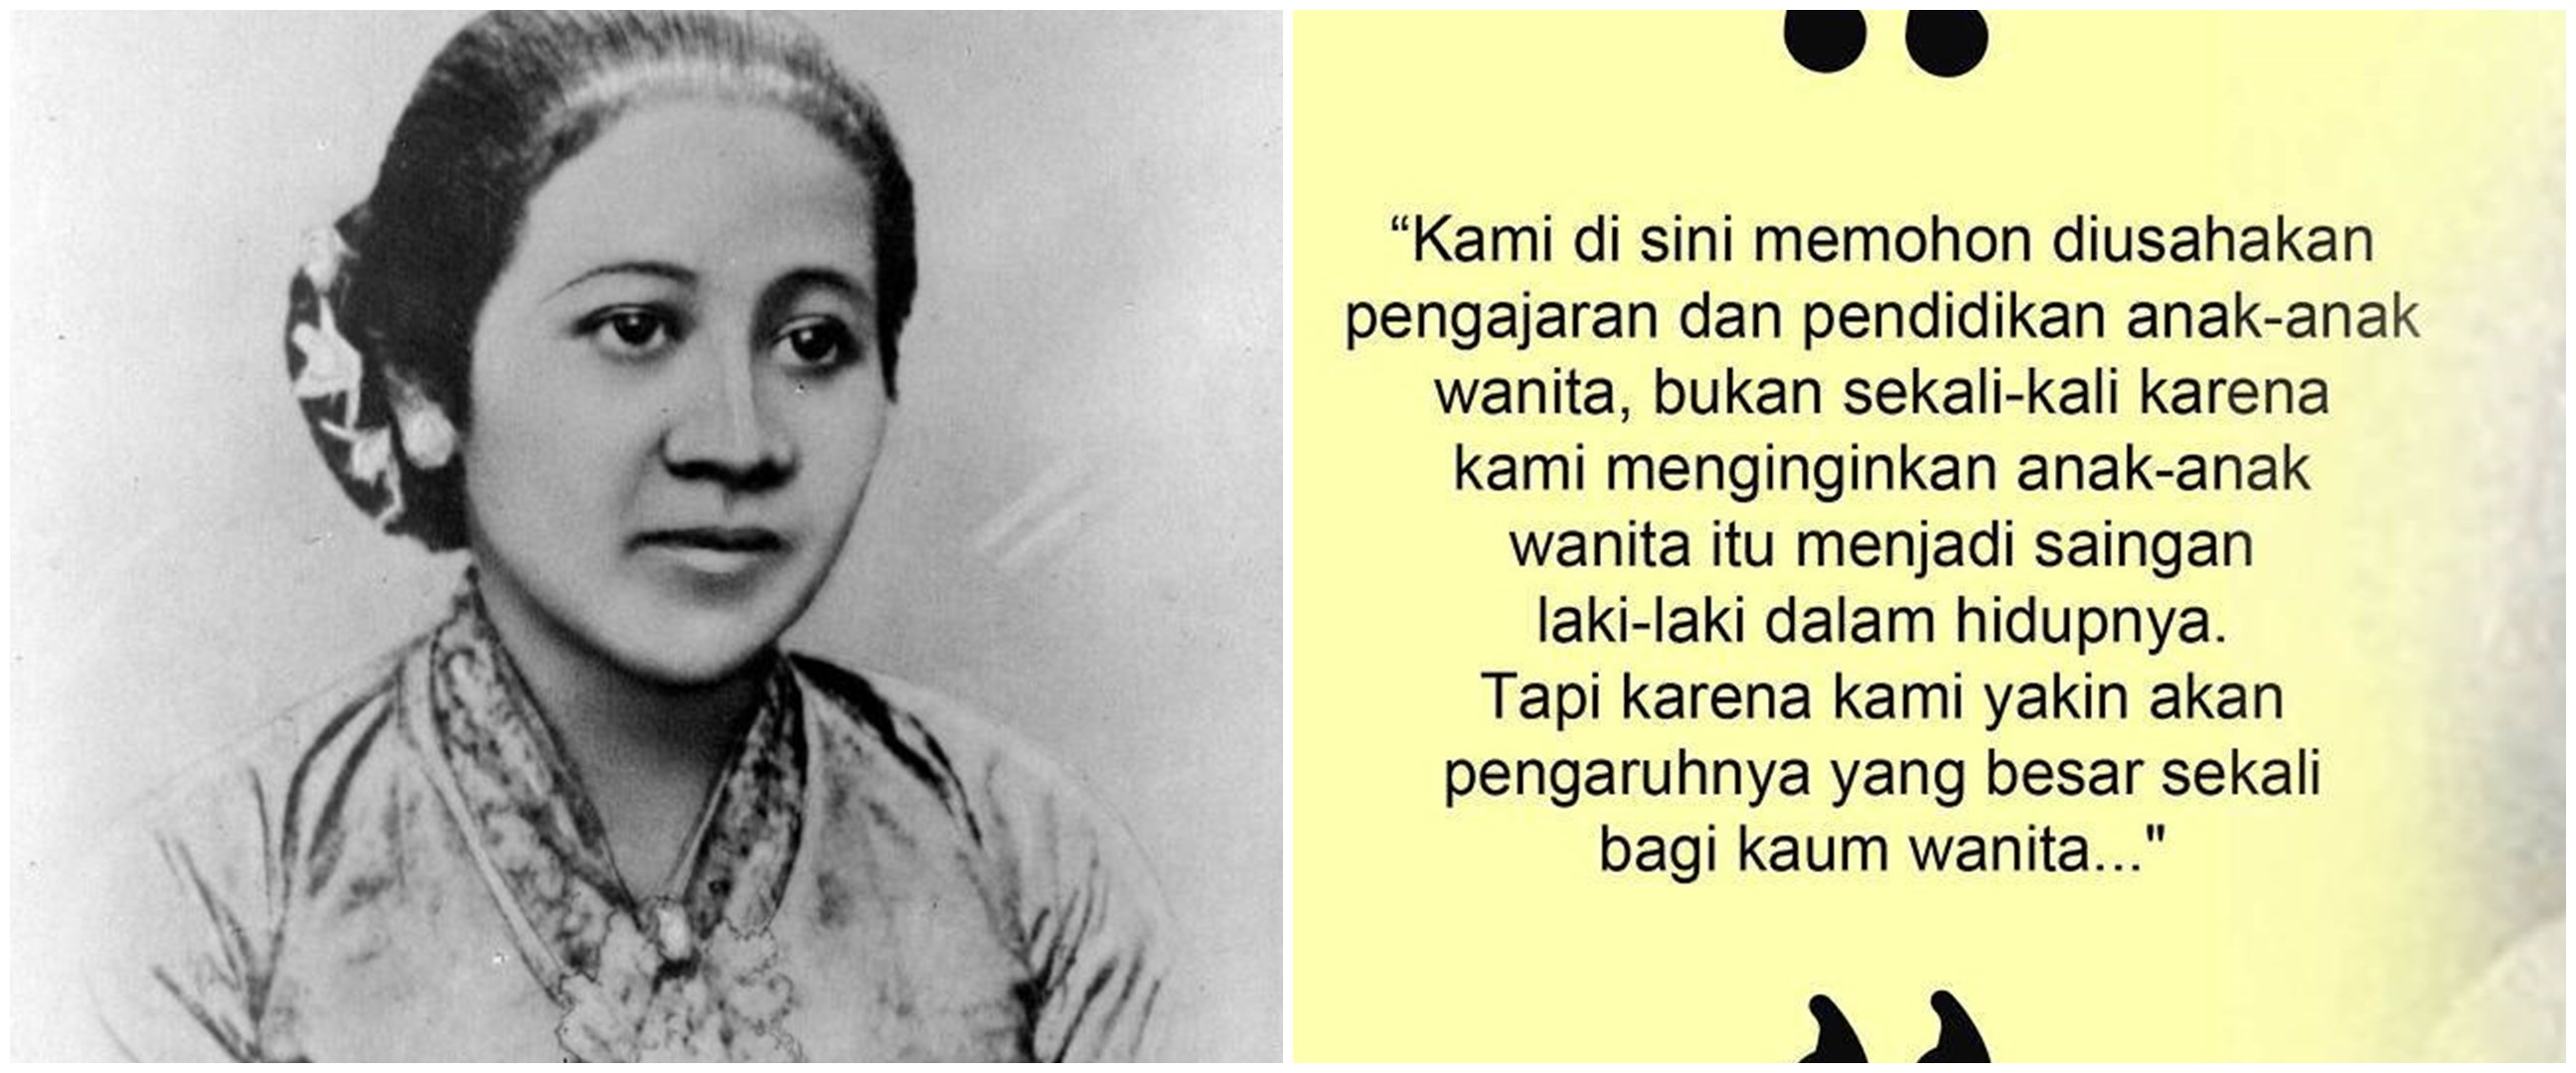 40 Kata-kata ucapan selamat Hari Kartini, inspiratif & menyentuh hati